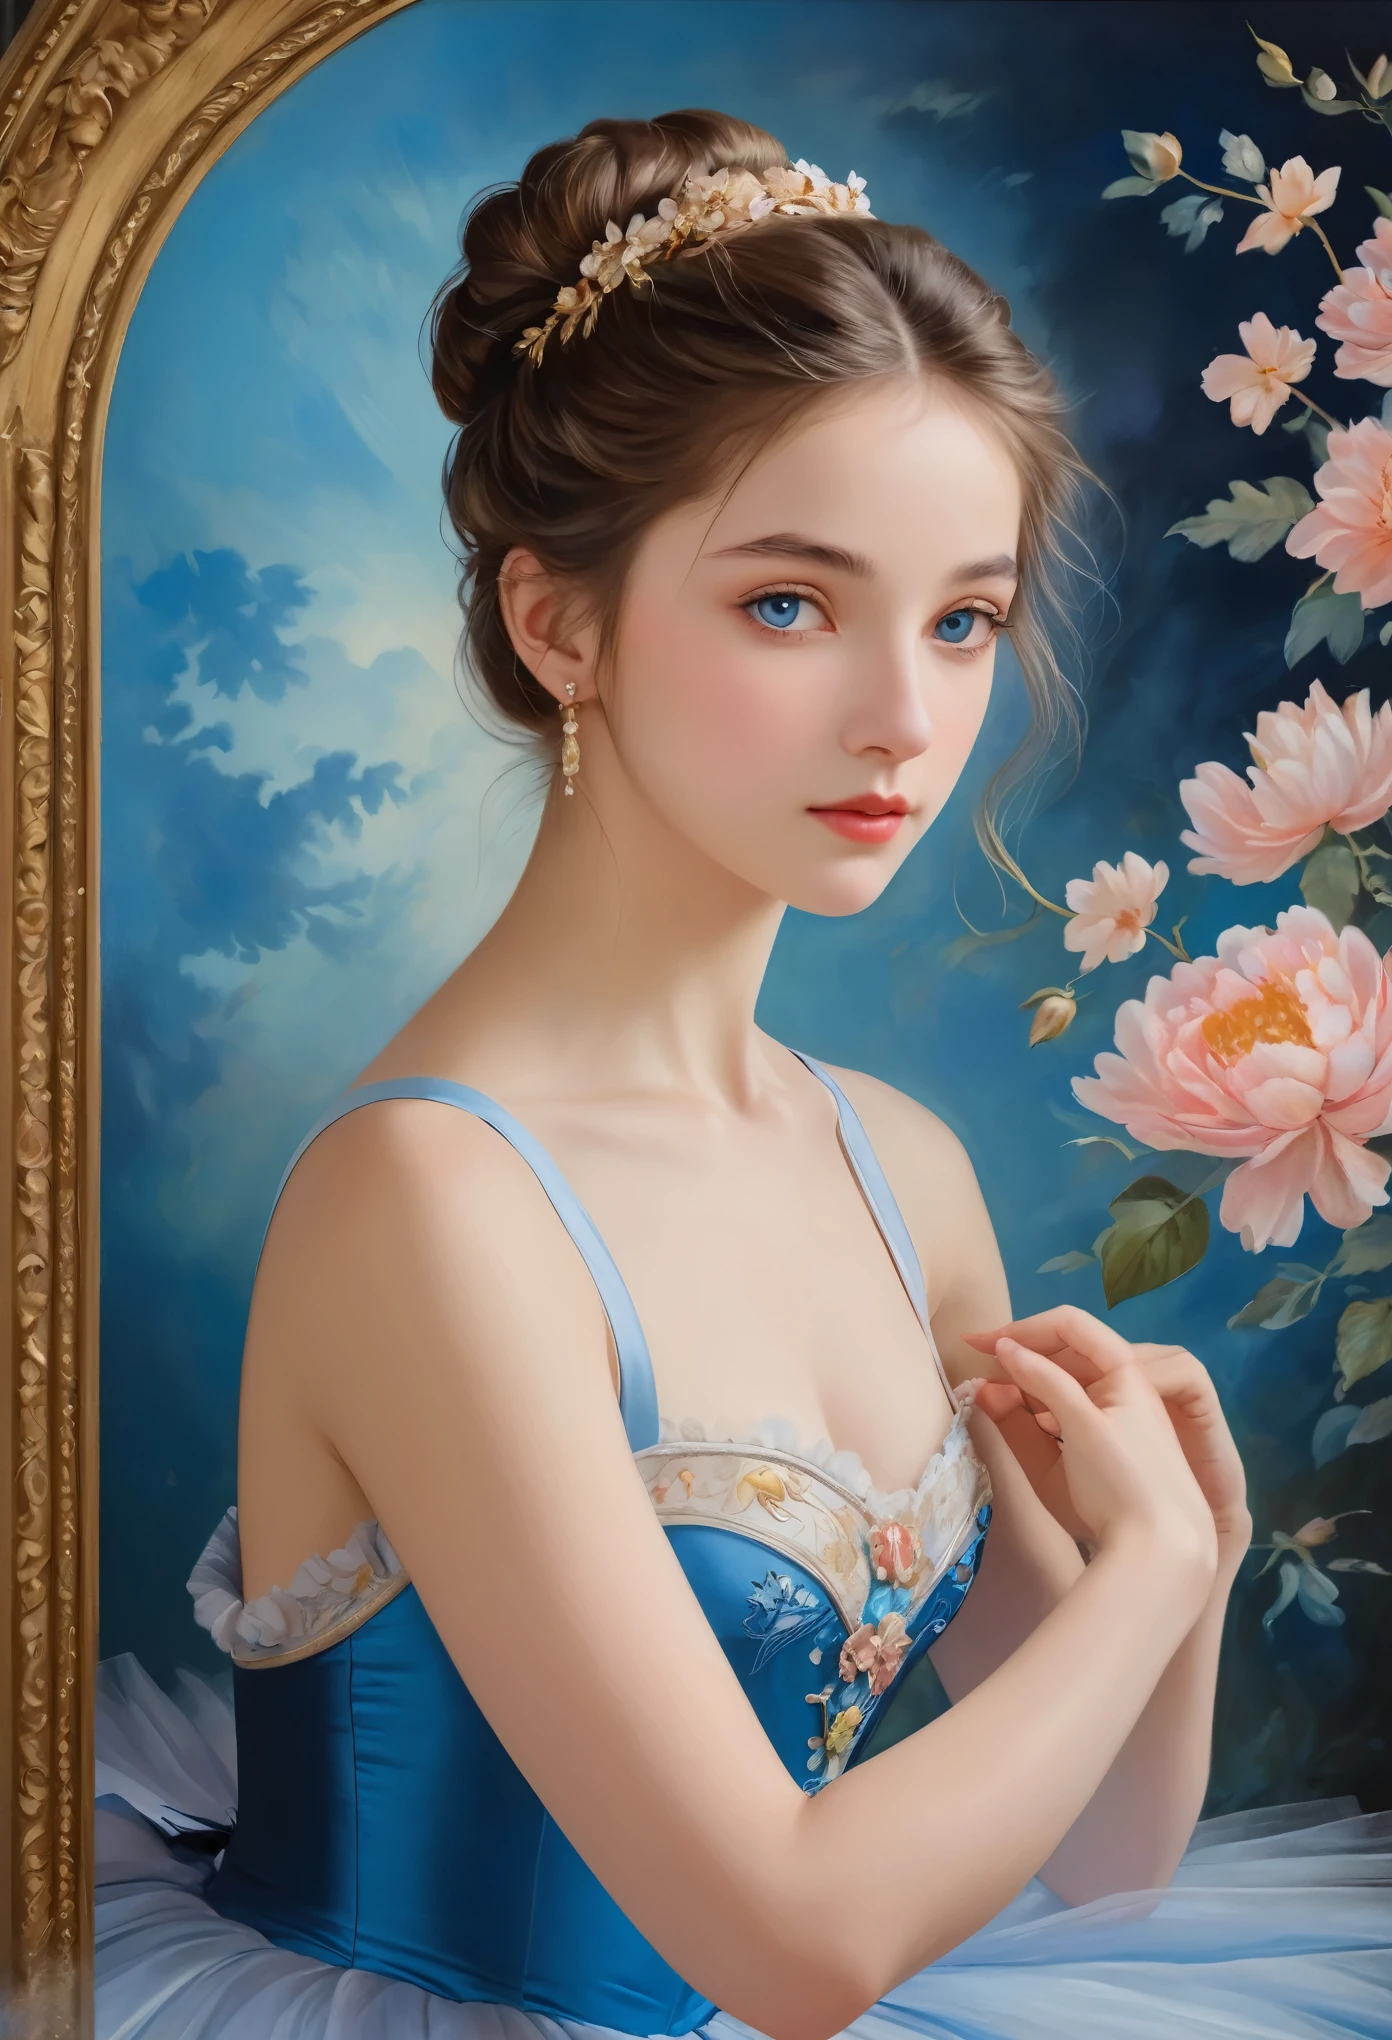 (高解像度,傑作:1.2),(現実的:1.37)"(最高品質, 高解像度, 非常に詳細, 現実的),19世紀に描かれた16歳のフランス人バレエダンサーの美しい肖像画, (彼女はフランス人と日本人のハーフです.., 彼女は深い青い目と高い鼻を持つ美しい女性です..:1.1), 美しいバレエ衣装, 詳細な顔の特徴, 長くて優雅な首, 流れるような髪の束, 落ち着いた優雅な姿勢, 柔らかく繊細な照明, 古典的な油絵の媒体, 鮮やかな色彩, 花のモチーフが描かれた繊細な背景", 夢のような雰囲気, シュルレアリスム,神秘的なオーラ